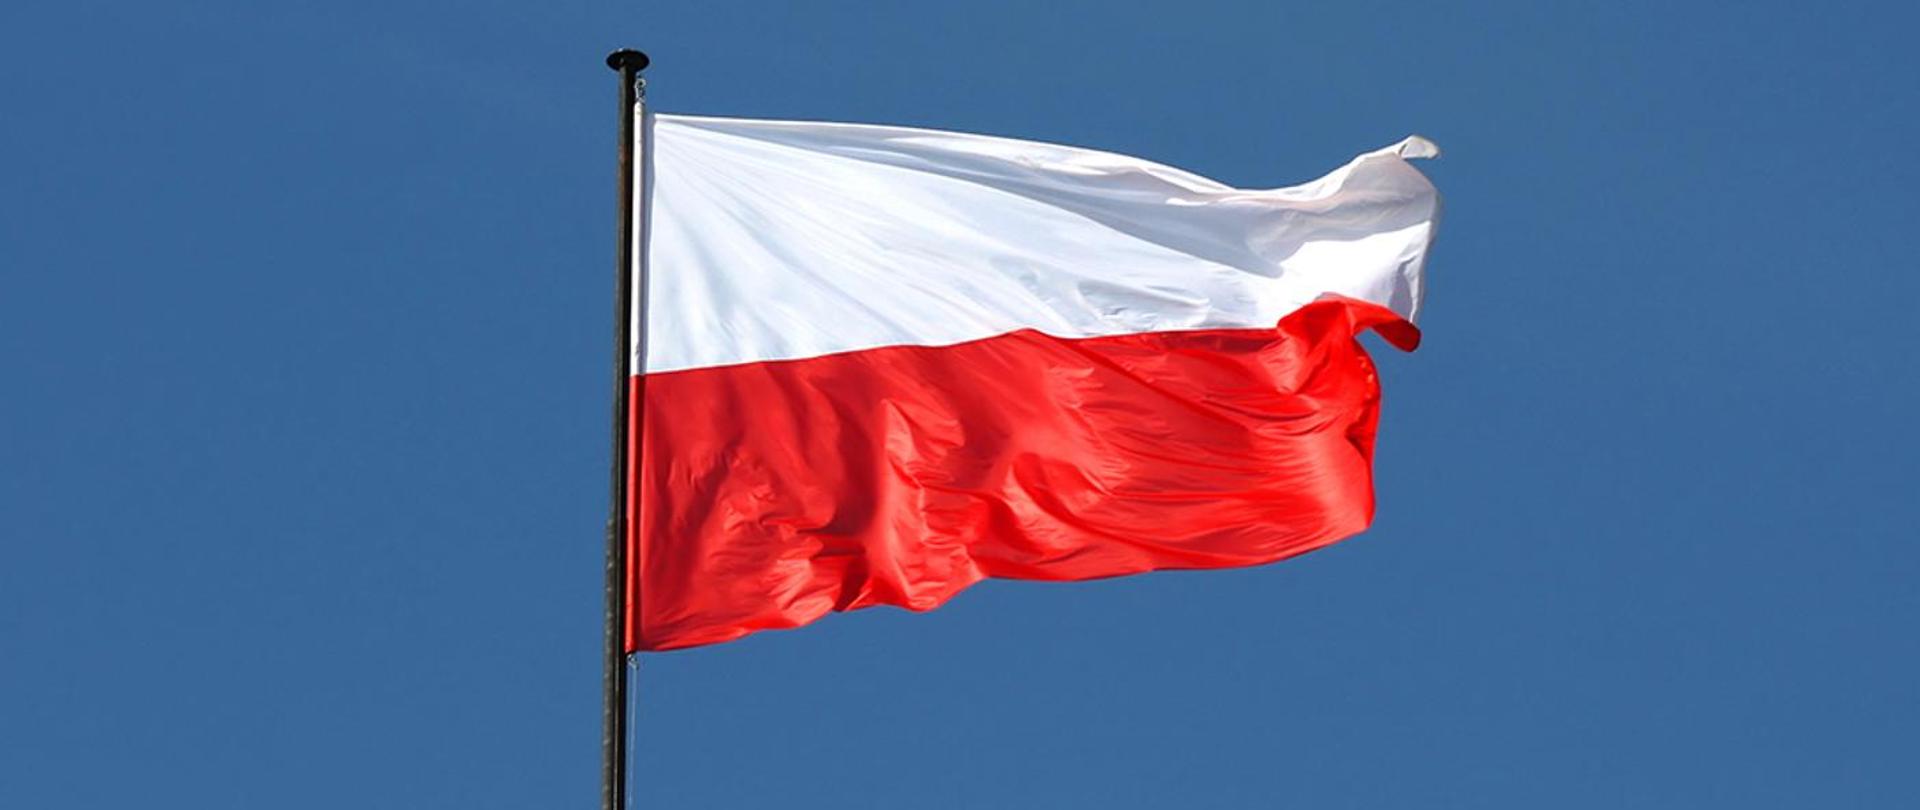 Na zdjęciu widoczna flaga Rzeczypospolitej Polskiej na ciemnym maszcie powiewająca w prawą stronę na tle bezchmurnego nieba.